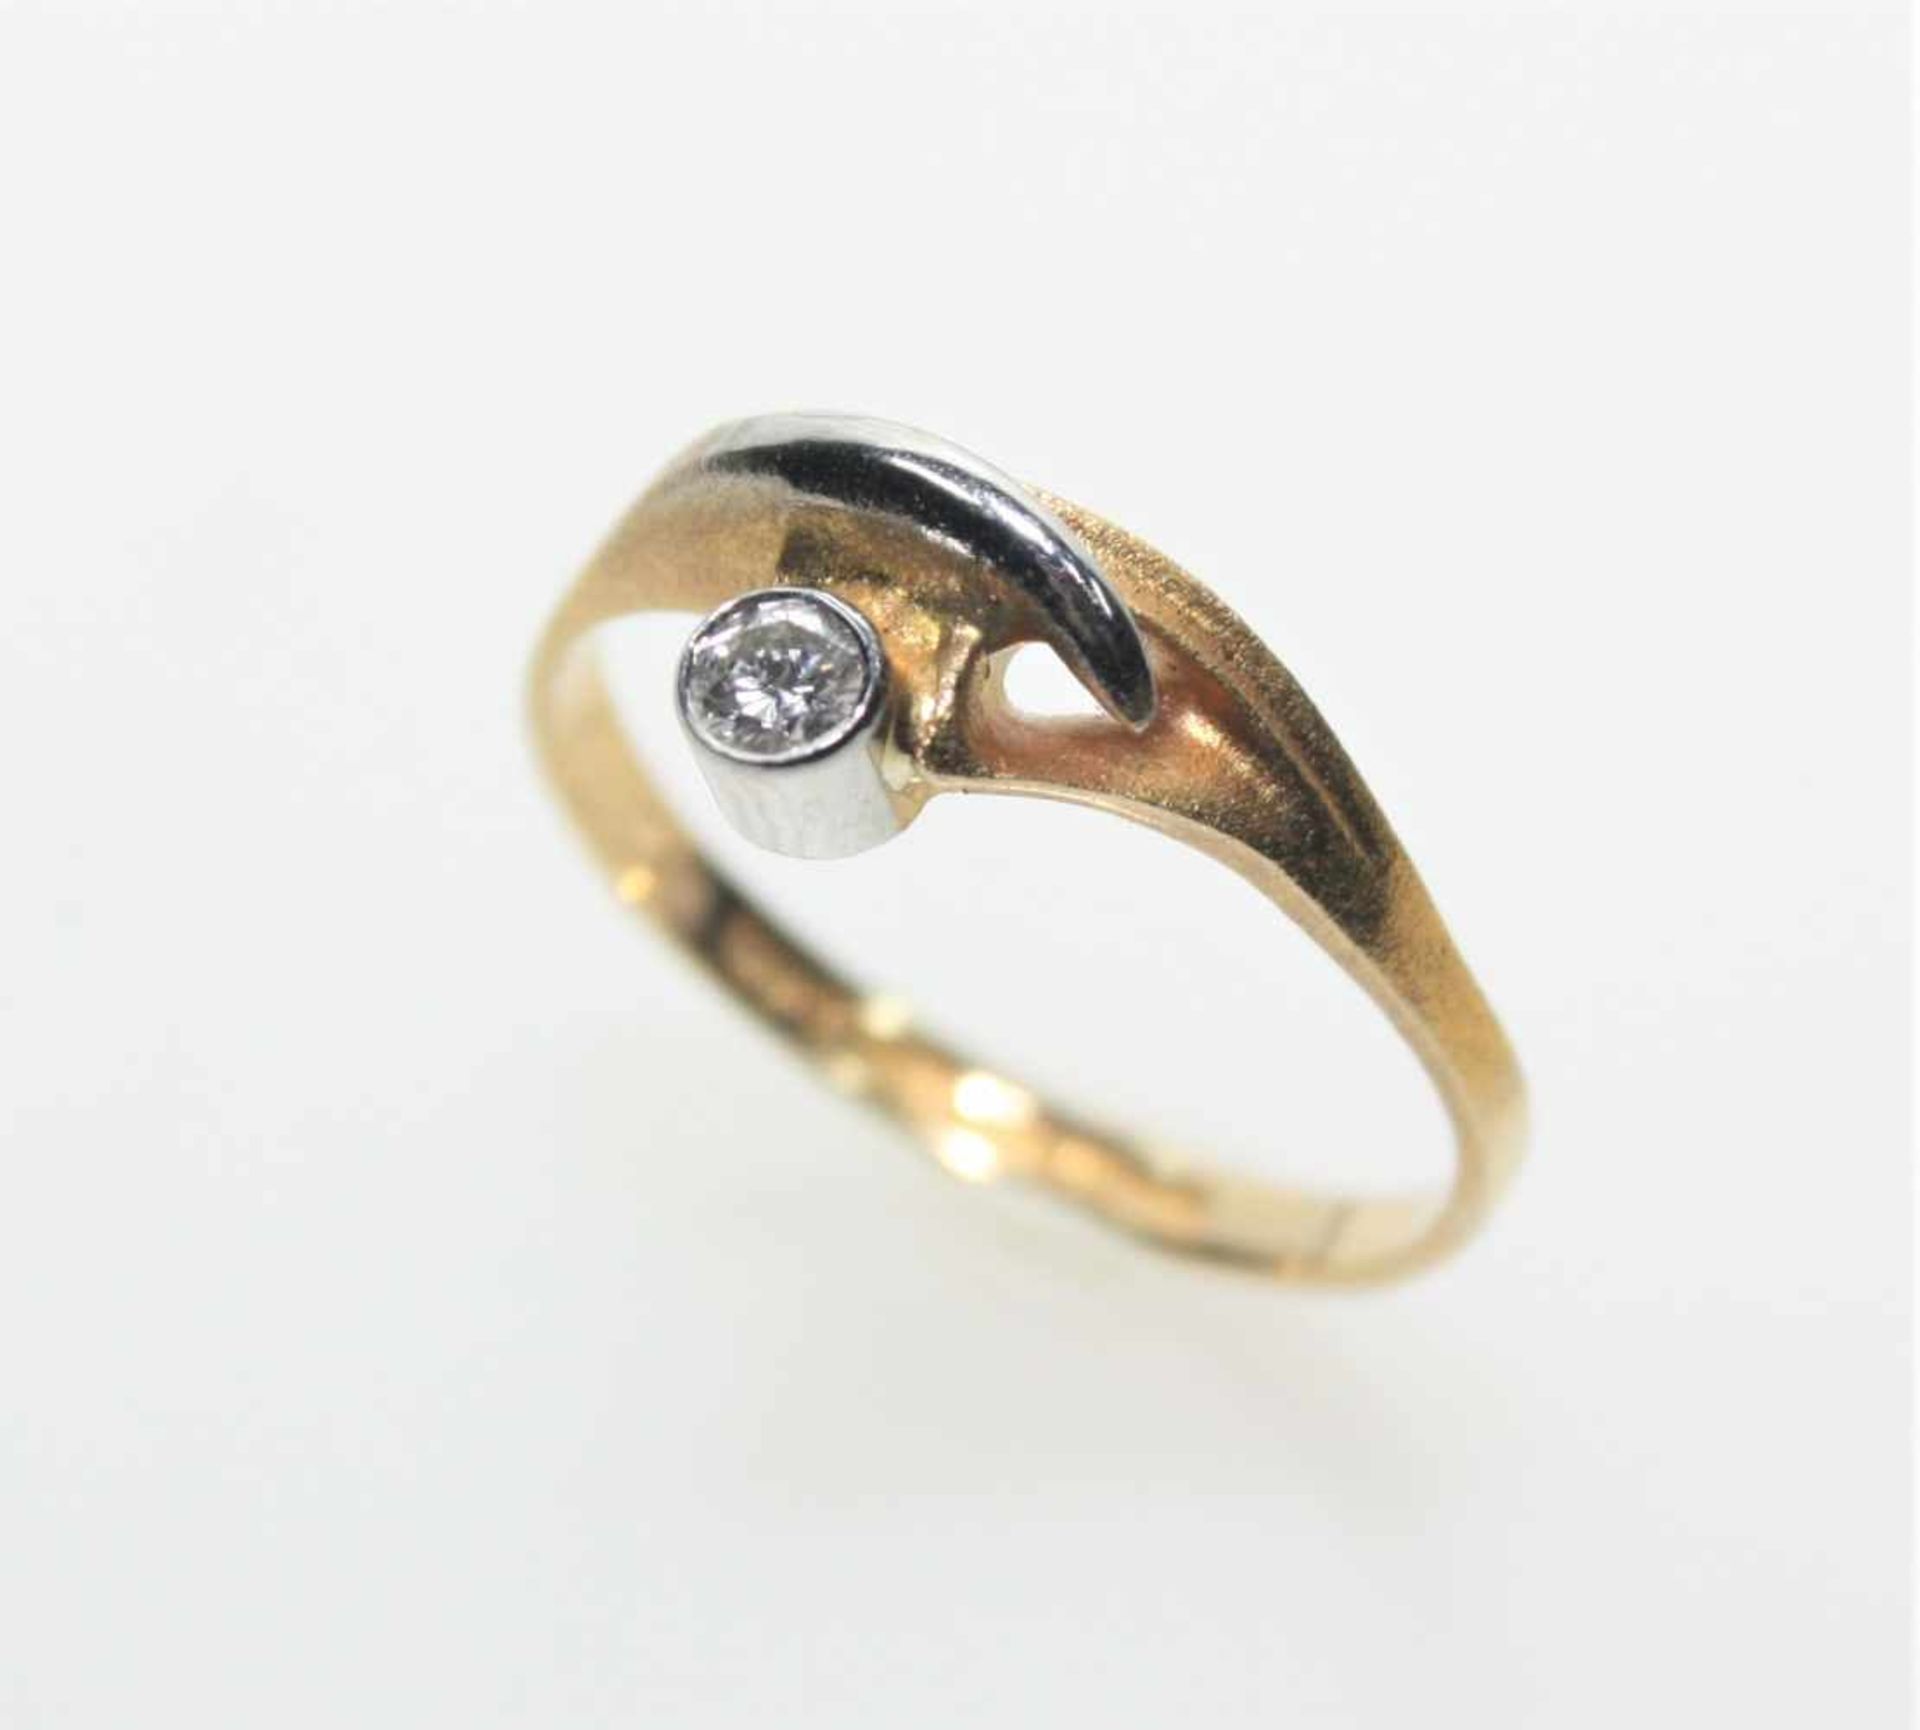 Schmaler Ring Gold mit Platin 750/f gest. Lapponia, in runder Zarge ein kleiner Diamant in